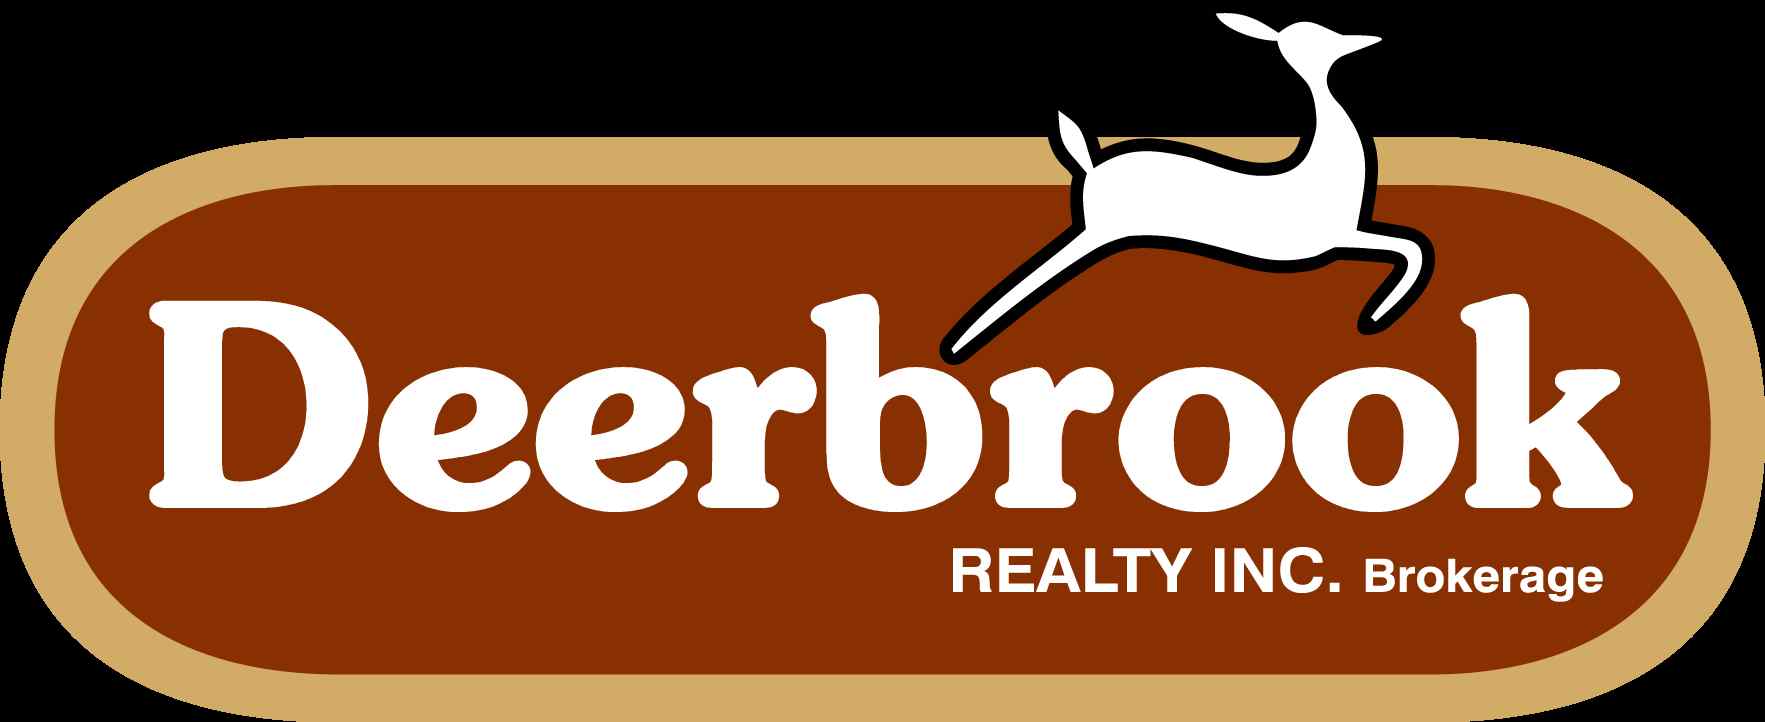 Deerbrook Realty Inc. Brokerage